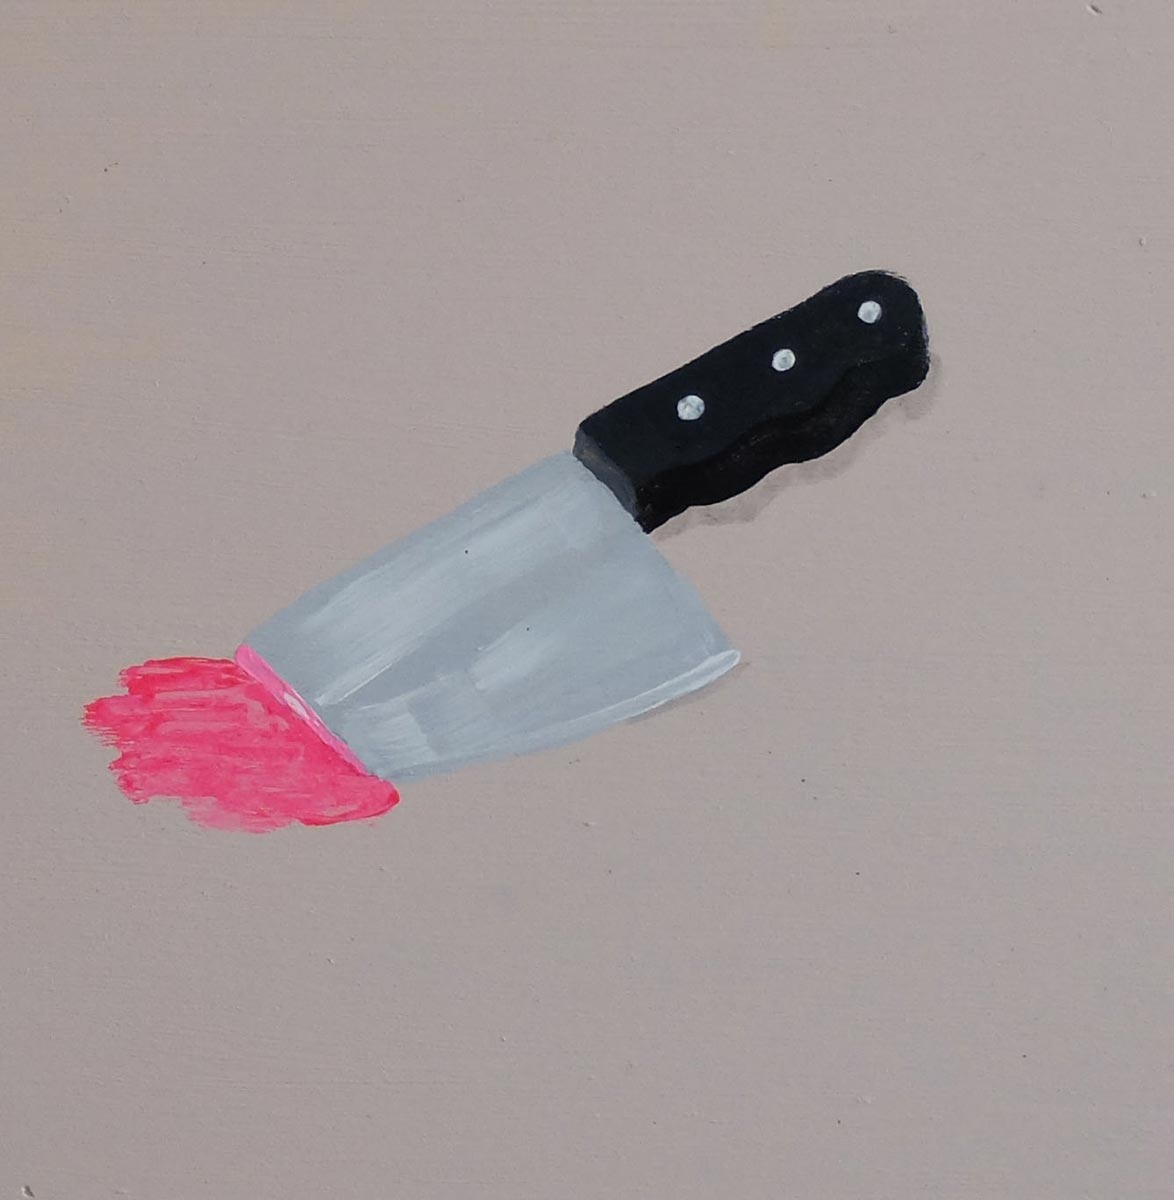 Dead cuchillo, 2016, acrylique sur bois, 20 x 20 cm